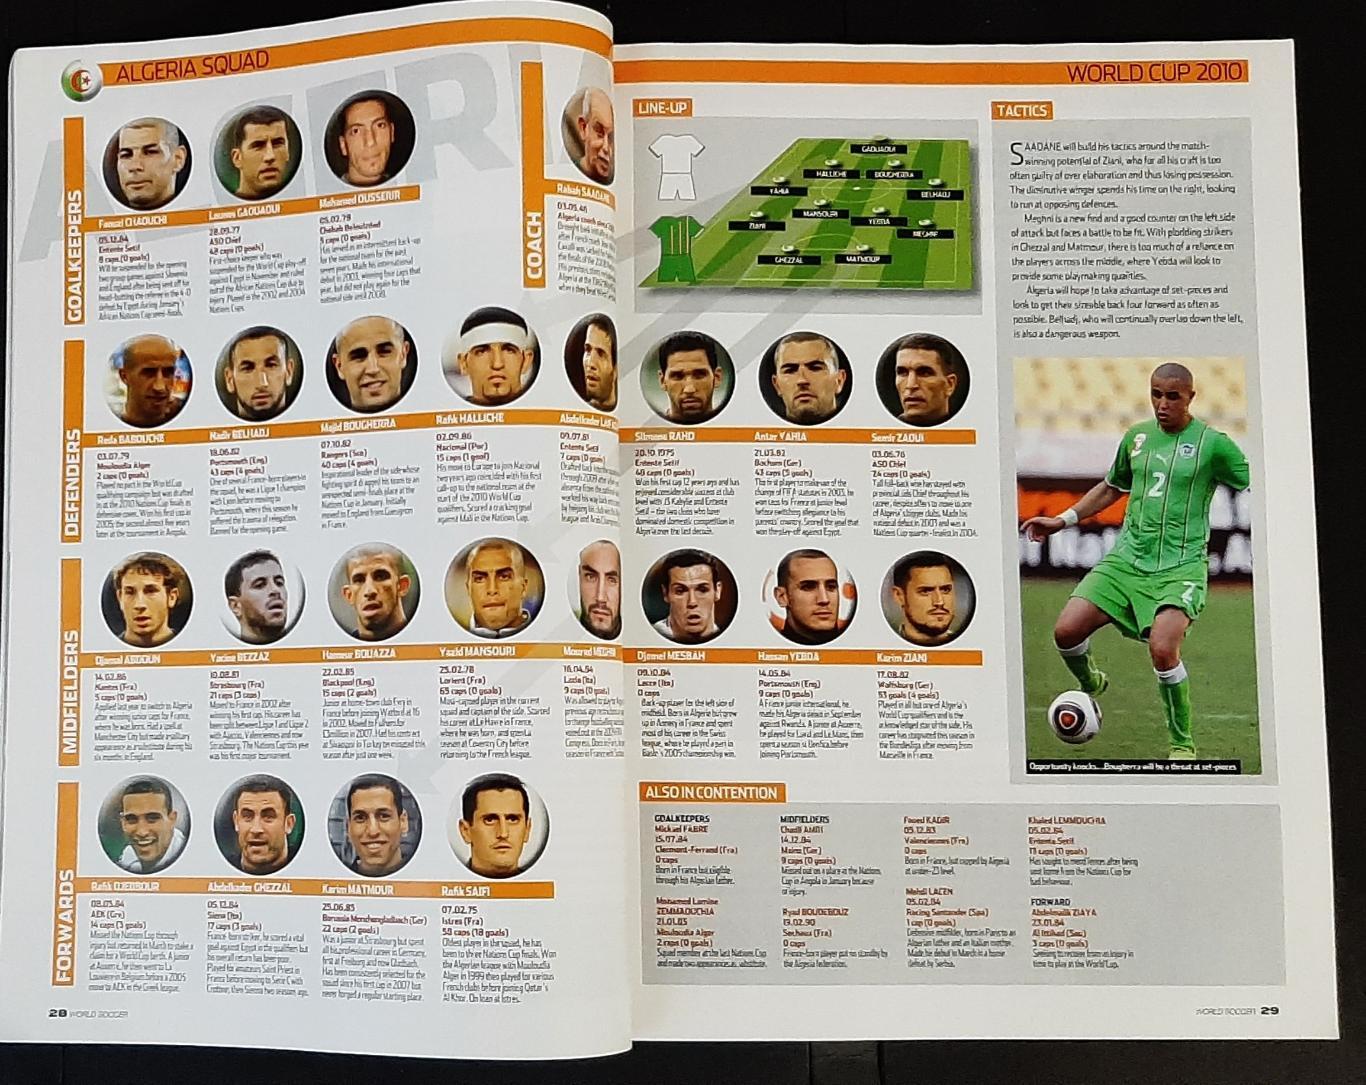 Журнал World soccer 2010 Представлення команд до чемпіонату світу 2